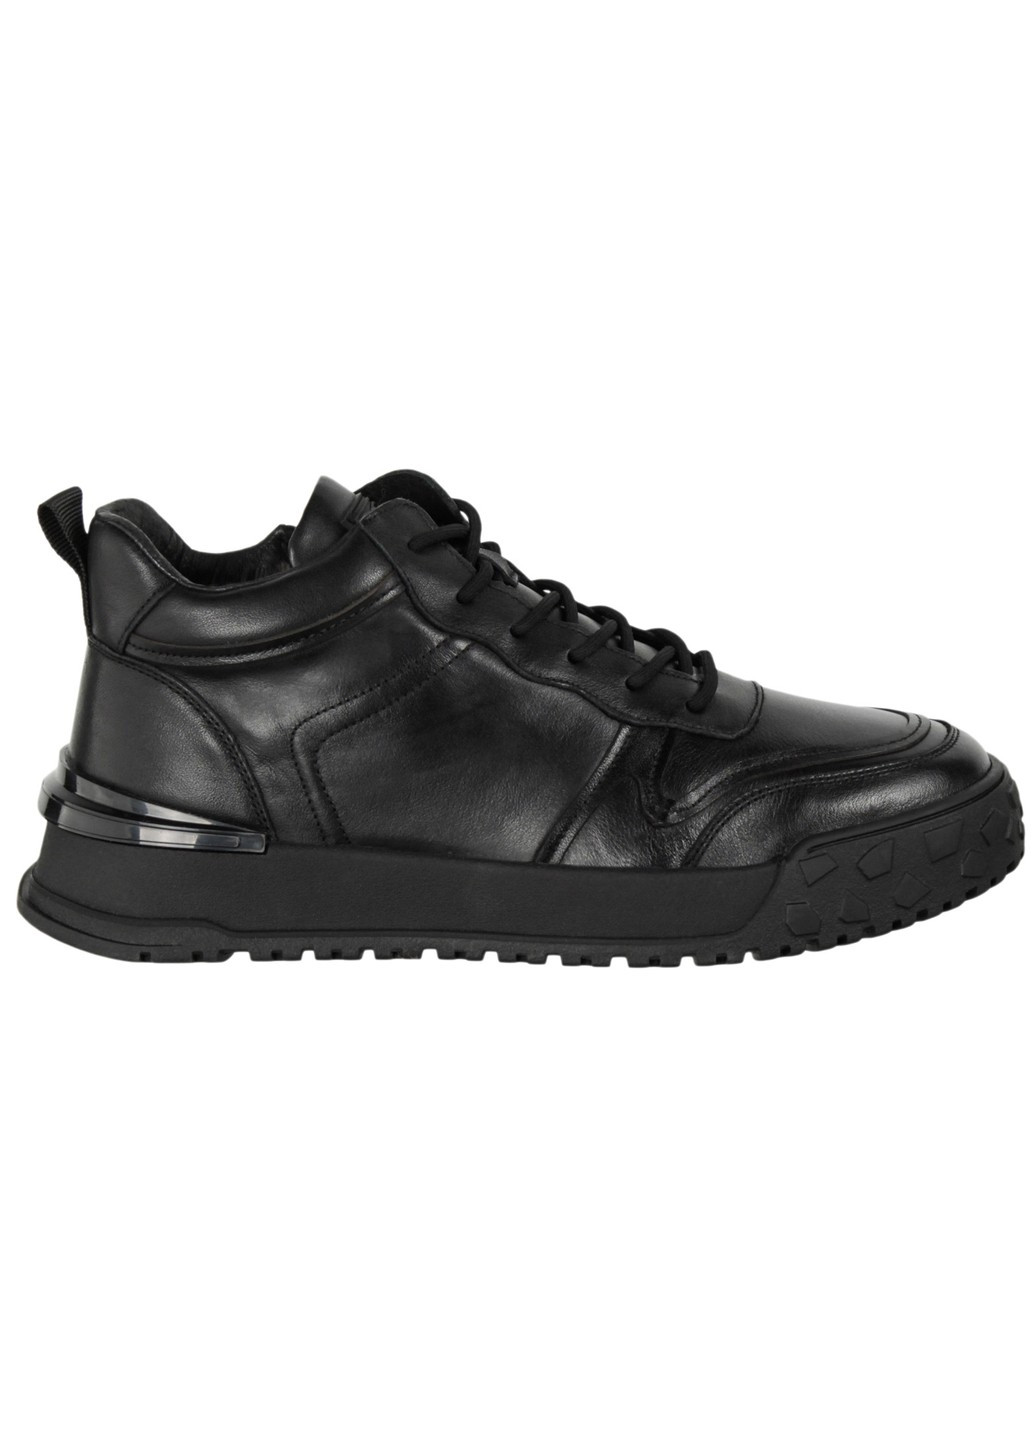 Черные зимние мужские ботинки 199642 Berisstini